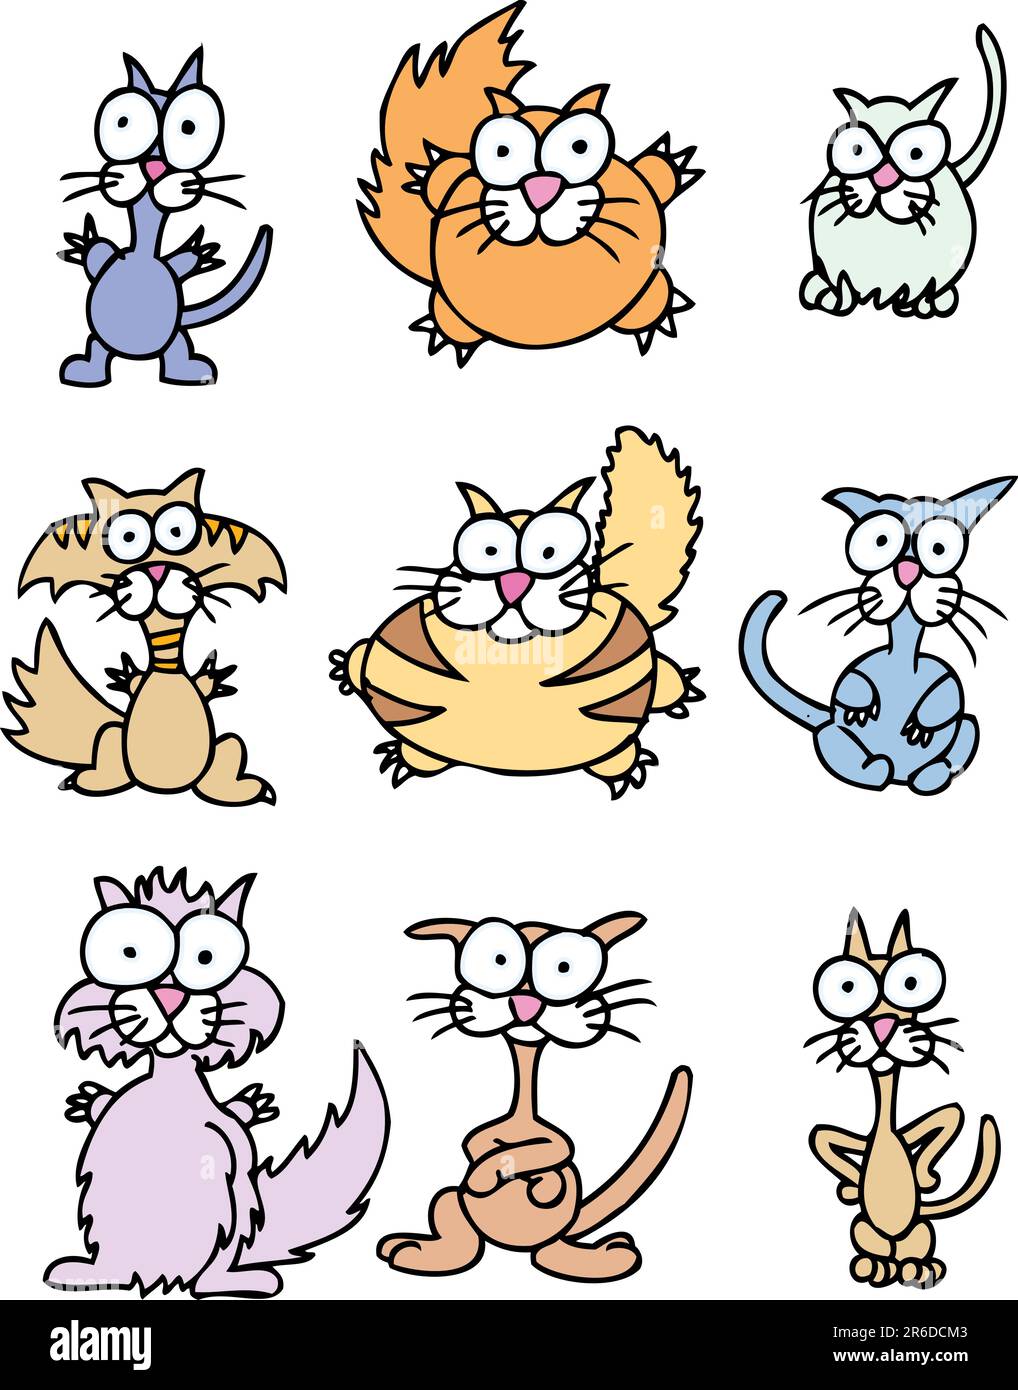 Set of 9 wacky cartoon cats. Stock Vector